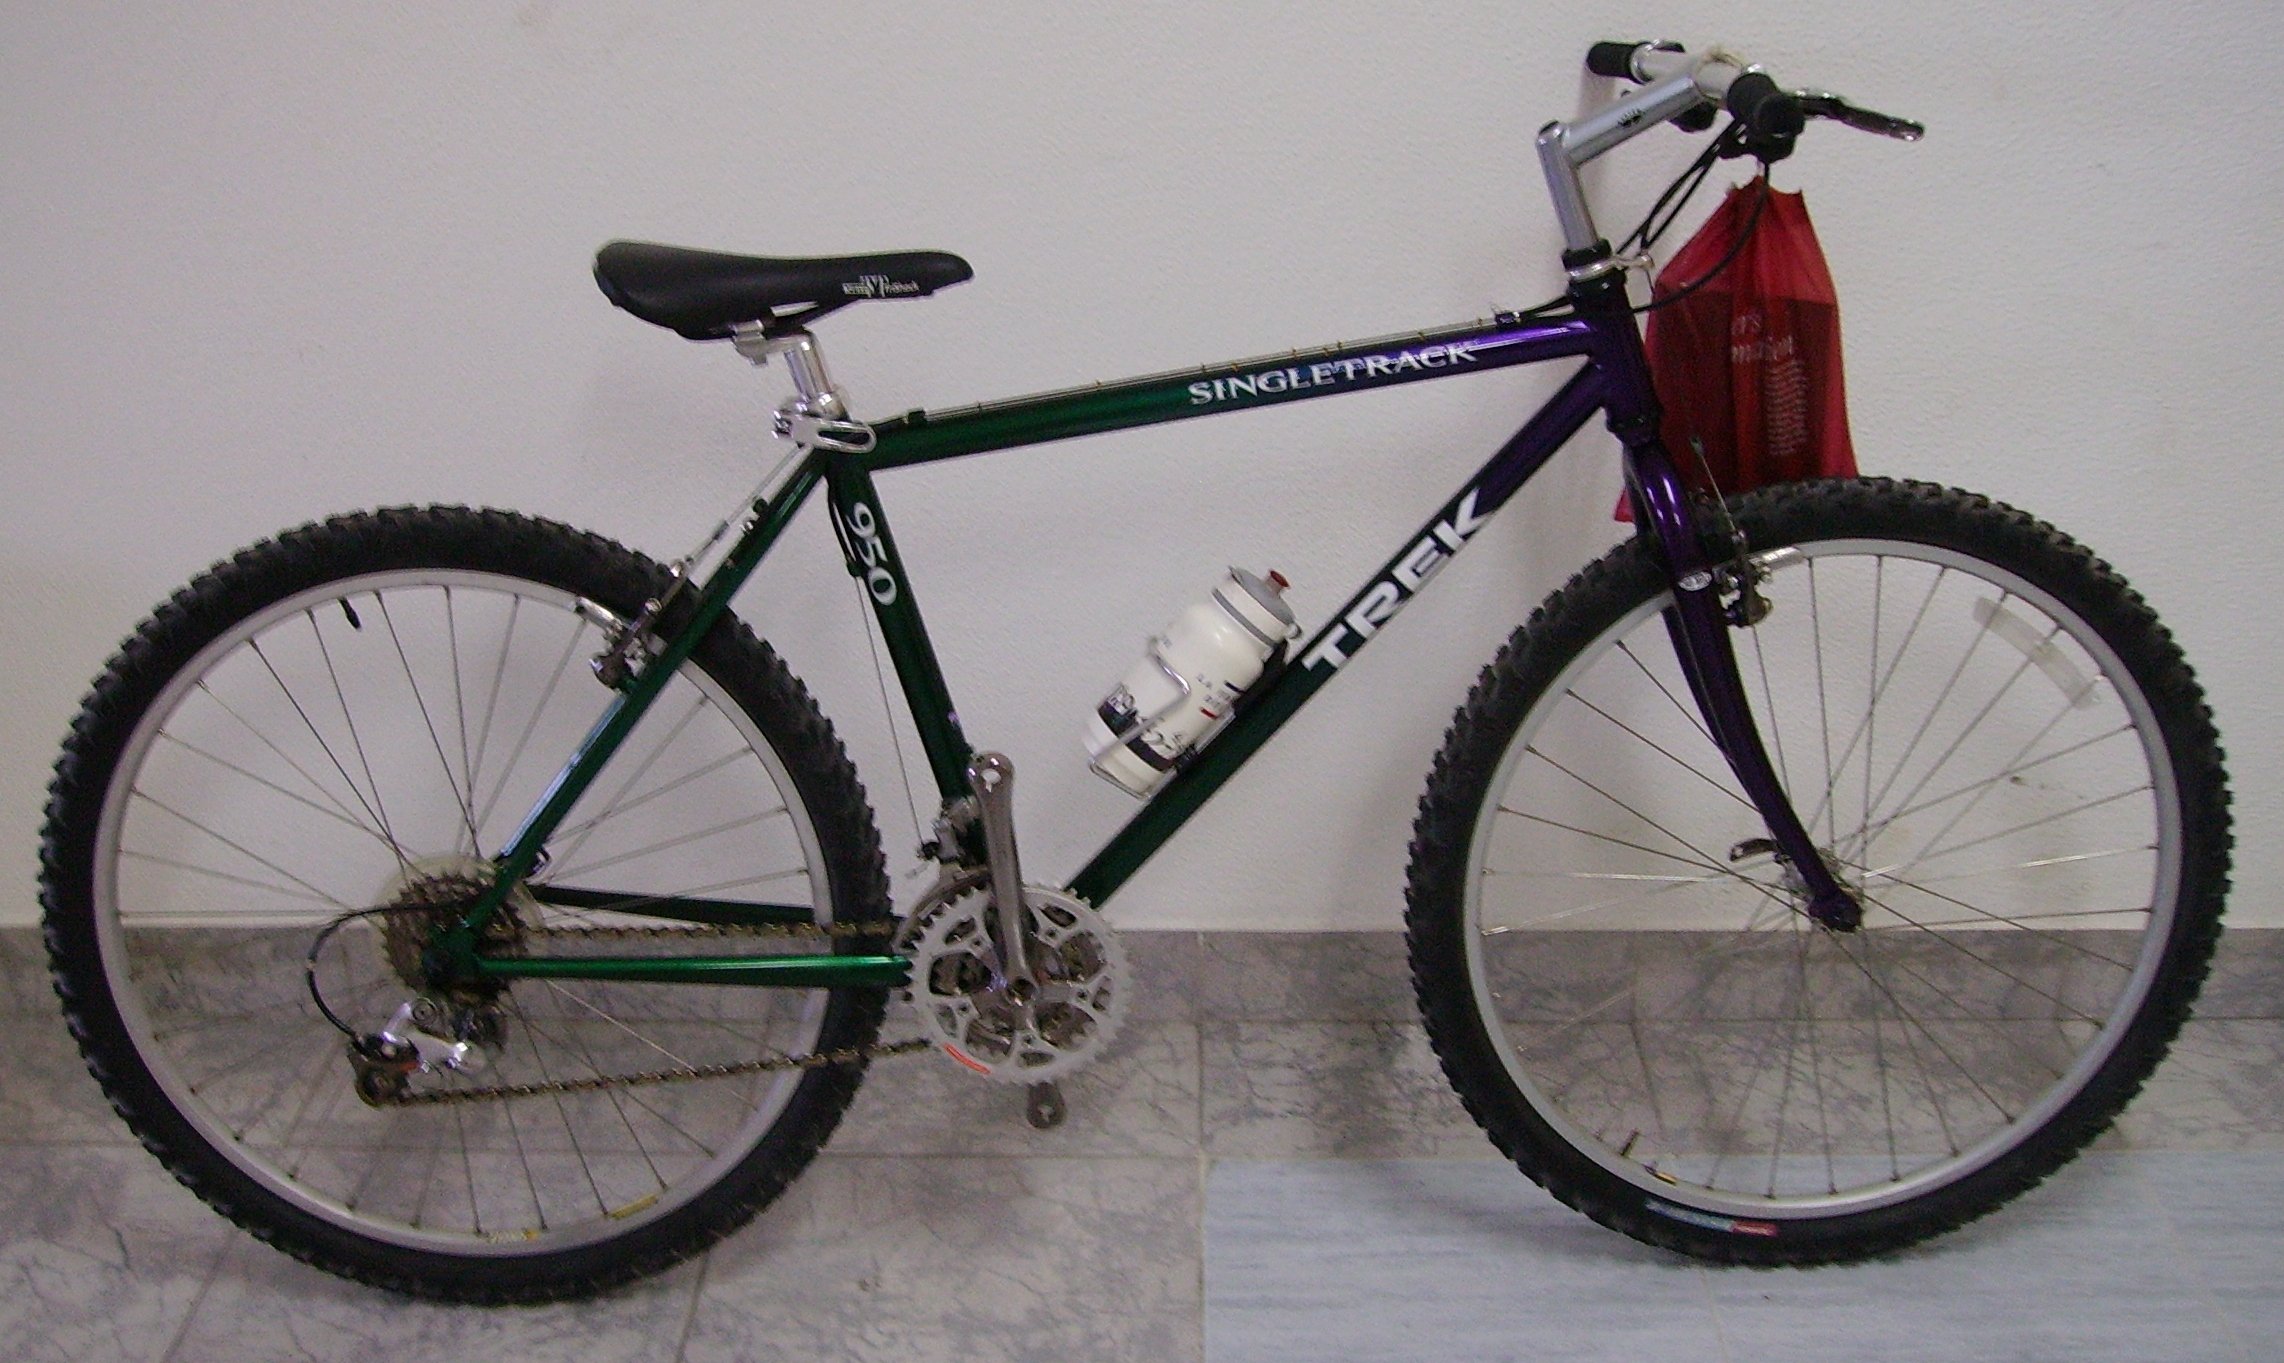  Bicicleta TREK - Singletrack 950 - Liquidação